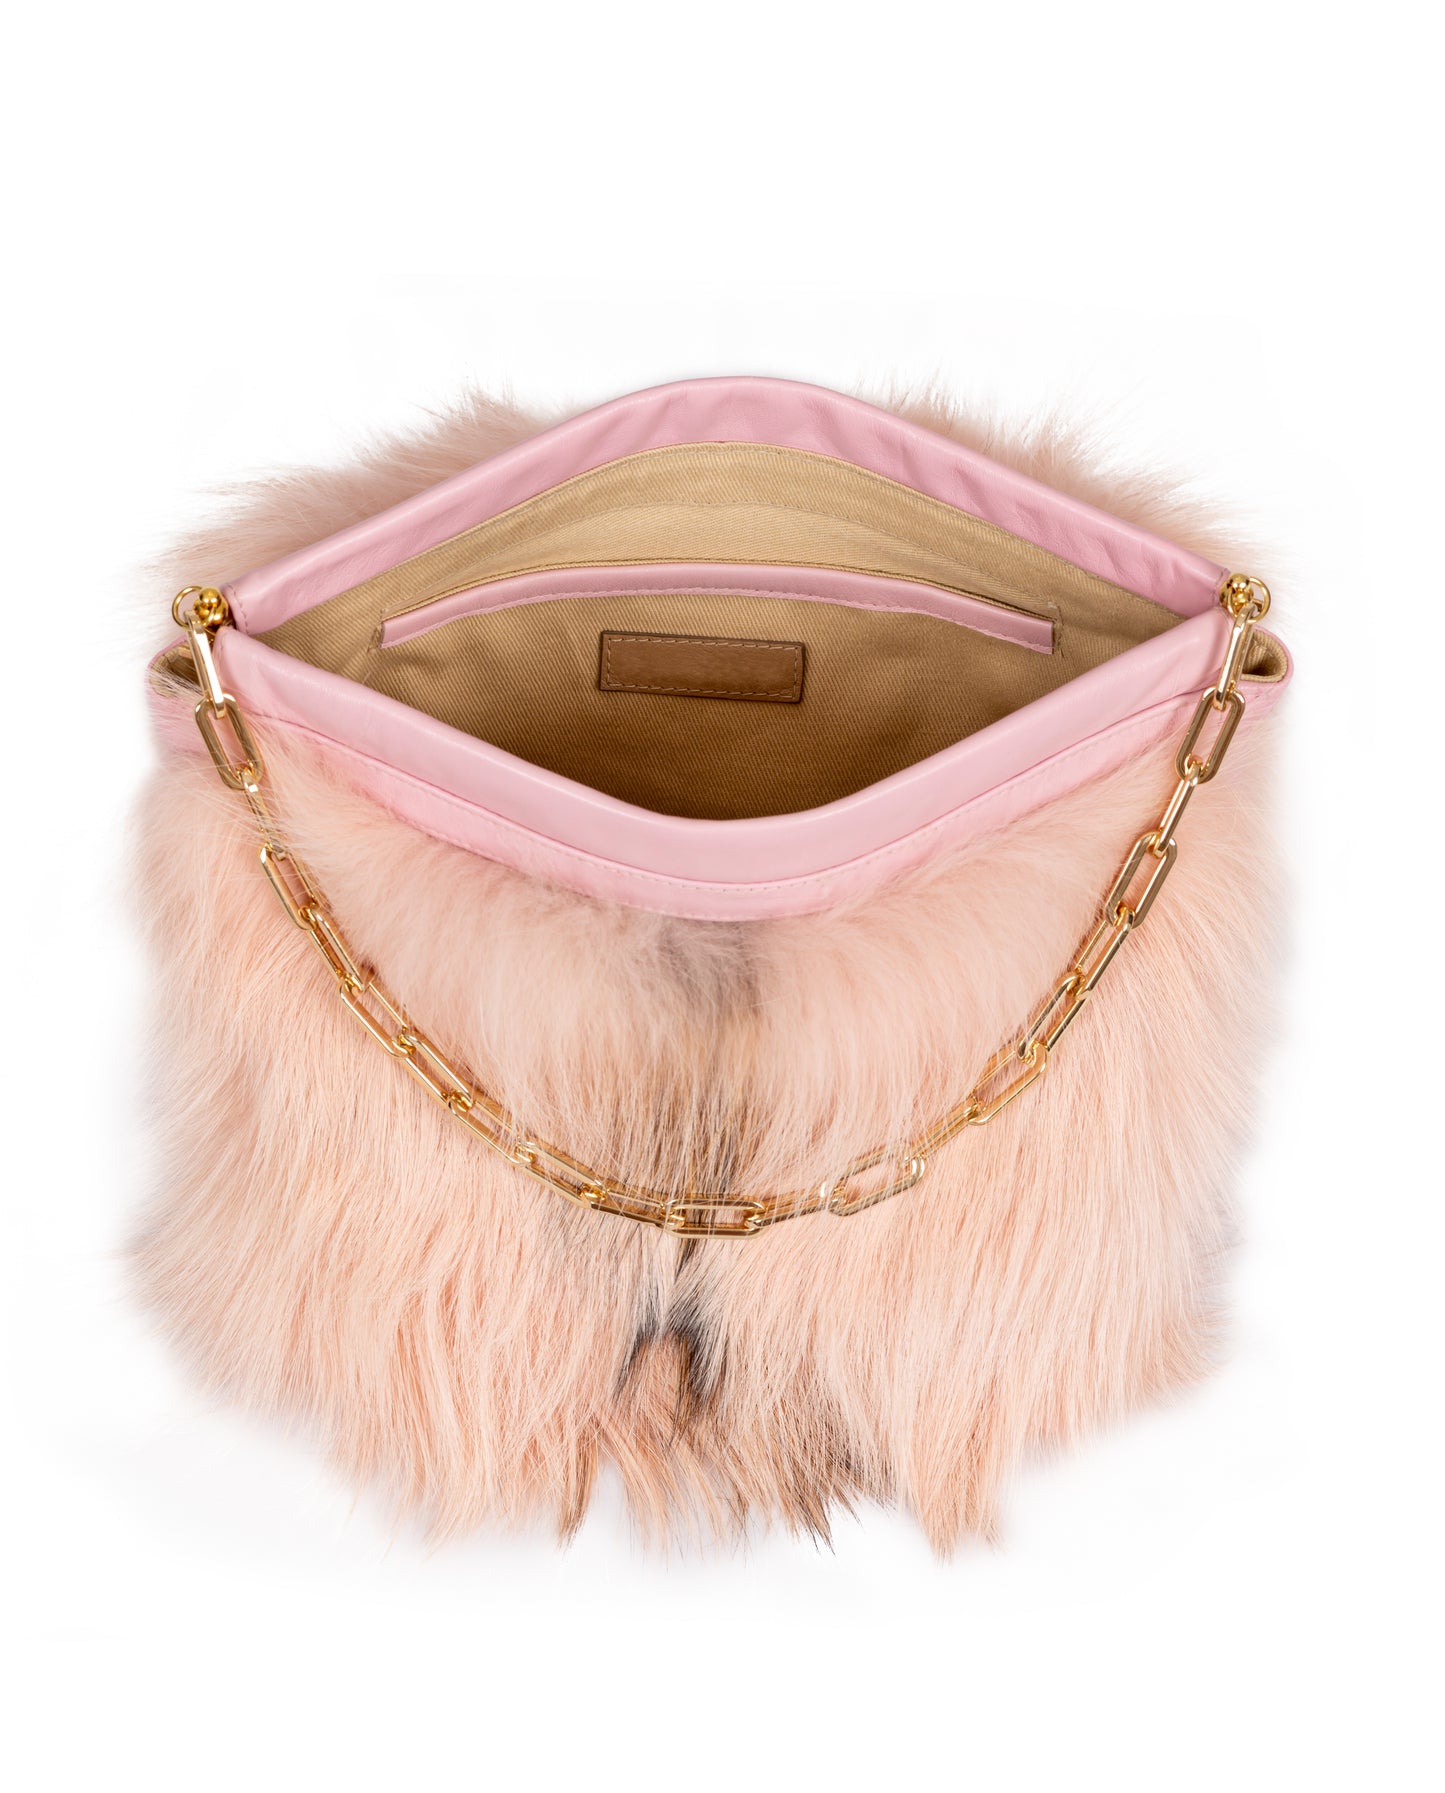 Paulita- Dyed Pink Fox Bag